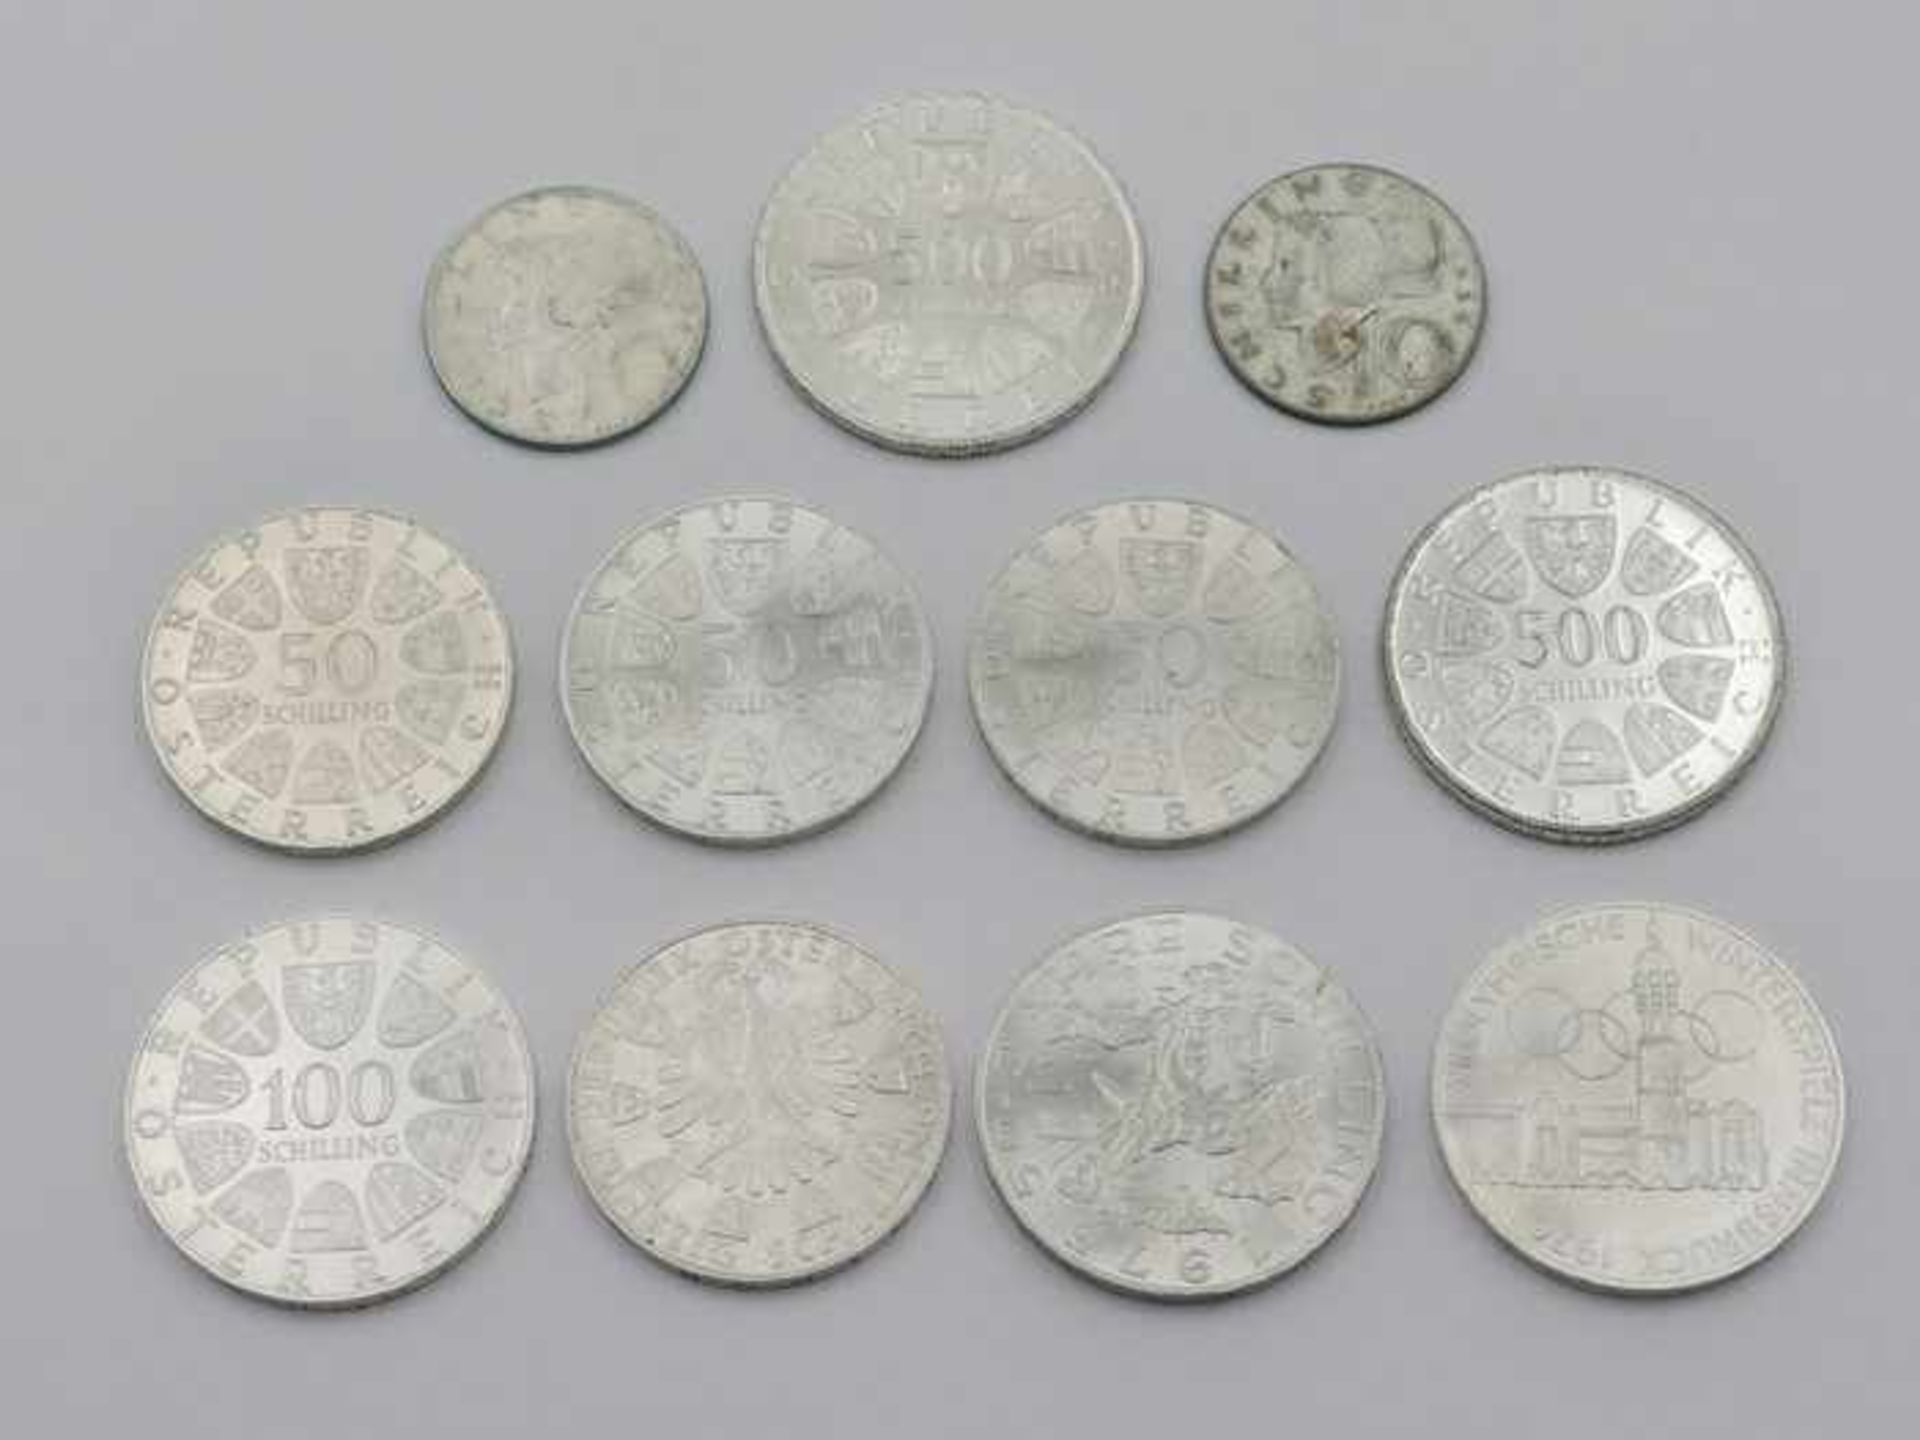 Münzen - ÖsterreichSi 640/900, Gedenkmünzen, 2x 500 Schilling, 1981, G je ca. 24g, 3x 100 Schilling, - Bild 2 aus 2